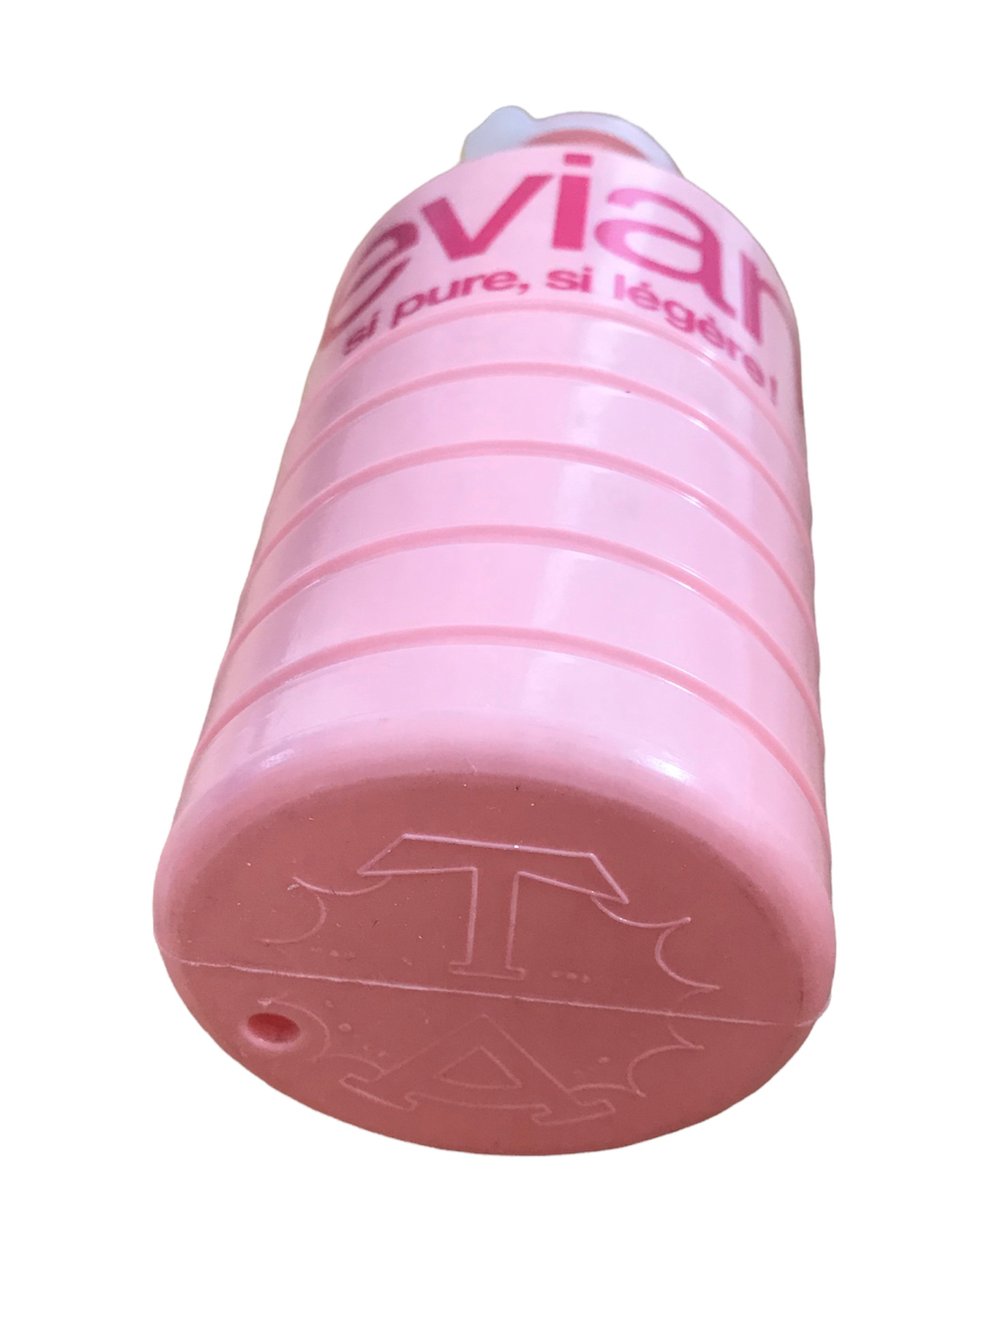 1972 - Tour de France / NOS Evian water bottle 